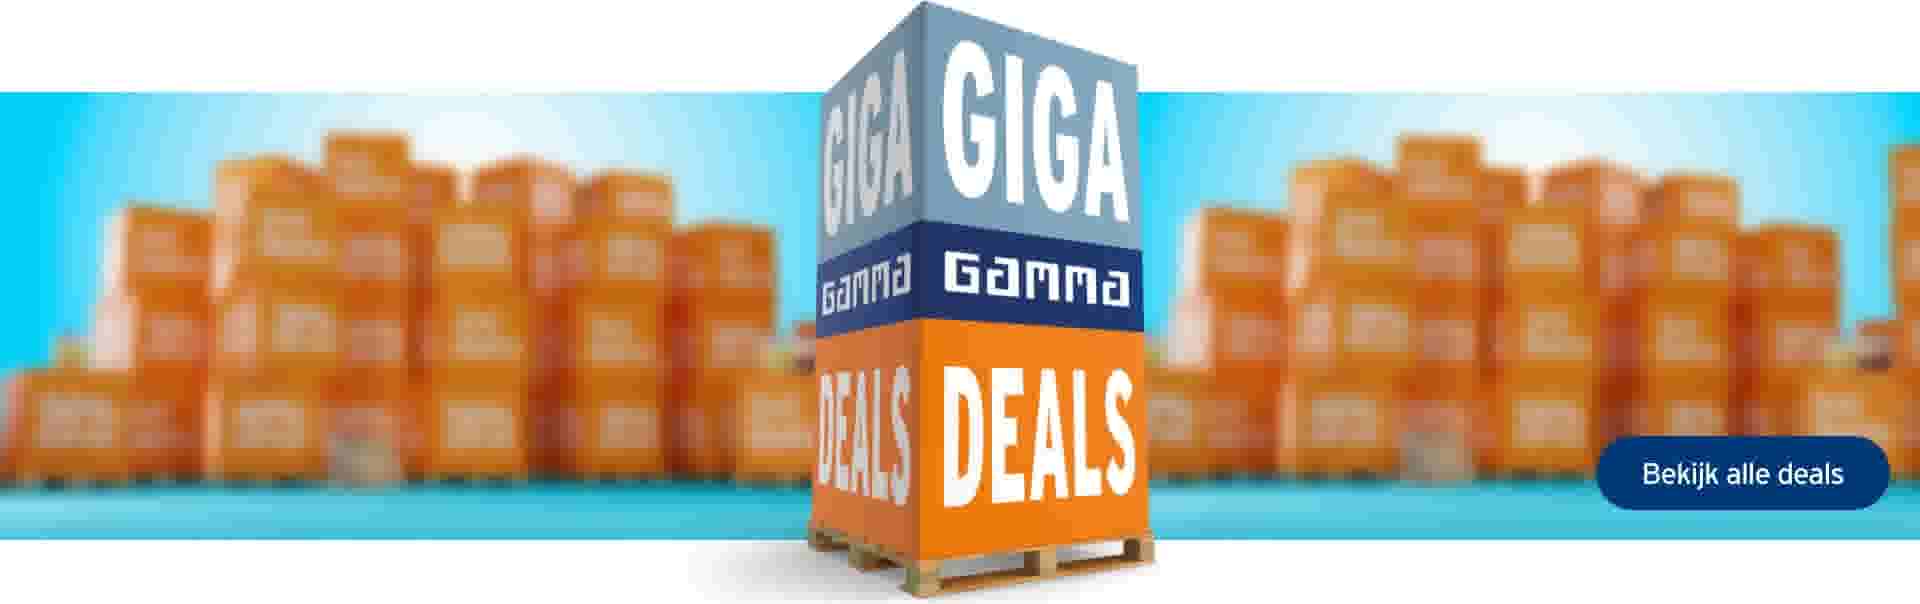 Giga gamma deals 